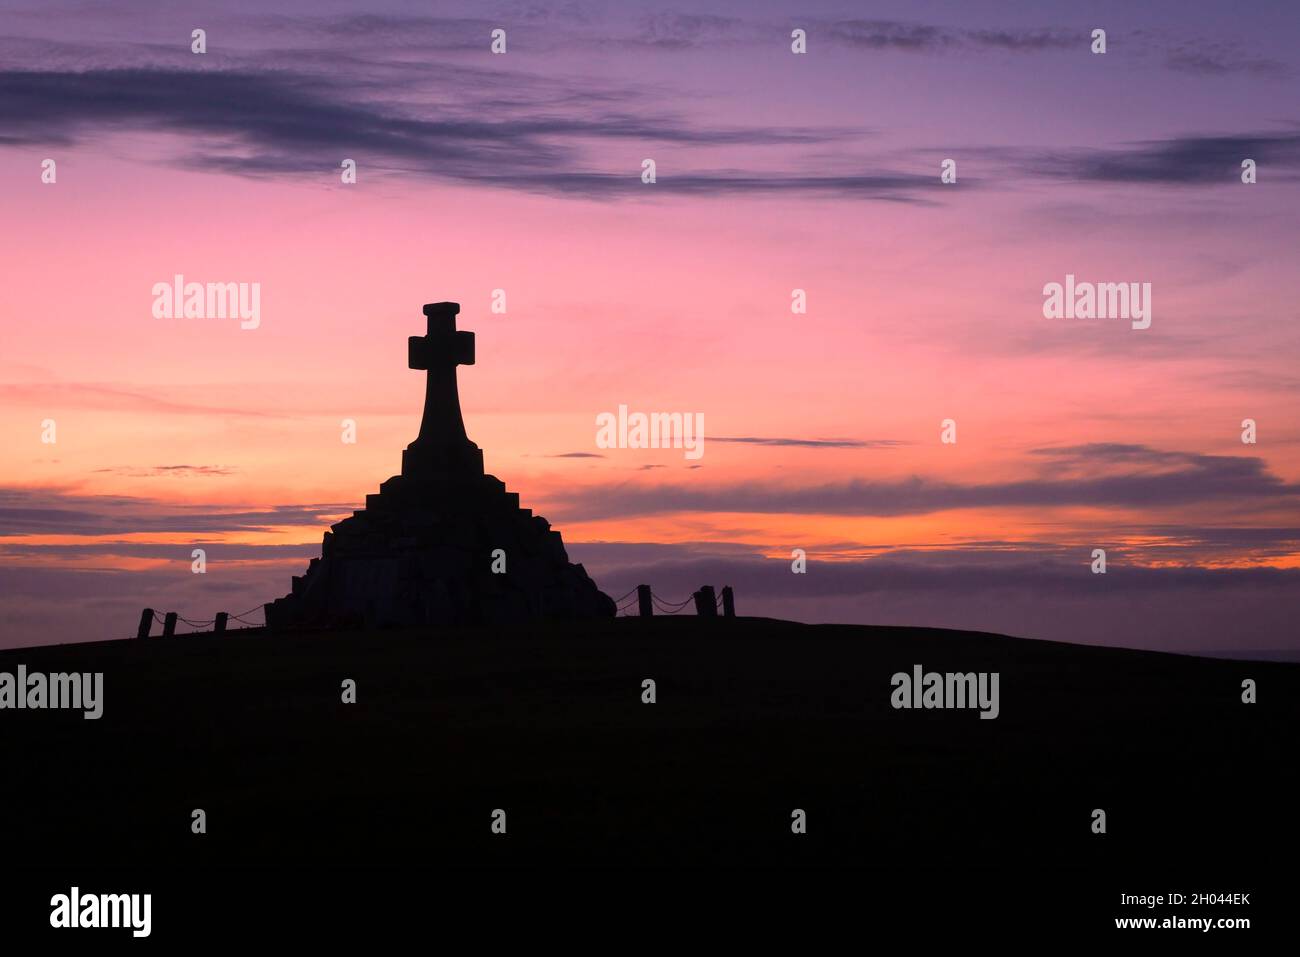 Das imposante Newquay war Memorial siulhoueted vor einem dramatischen Sonnenuntergang in Cornwall. Stockfoto